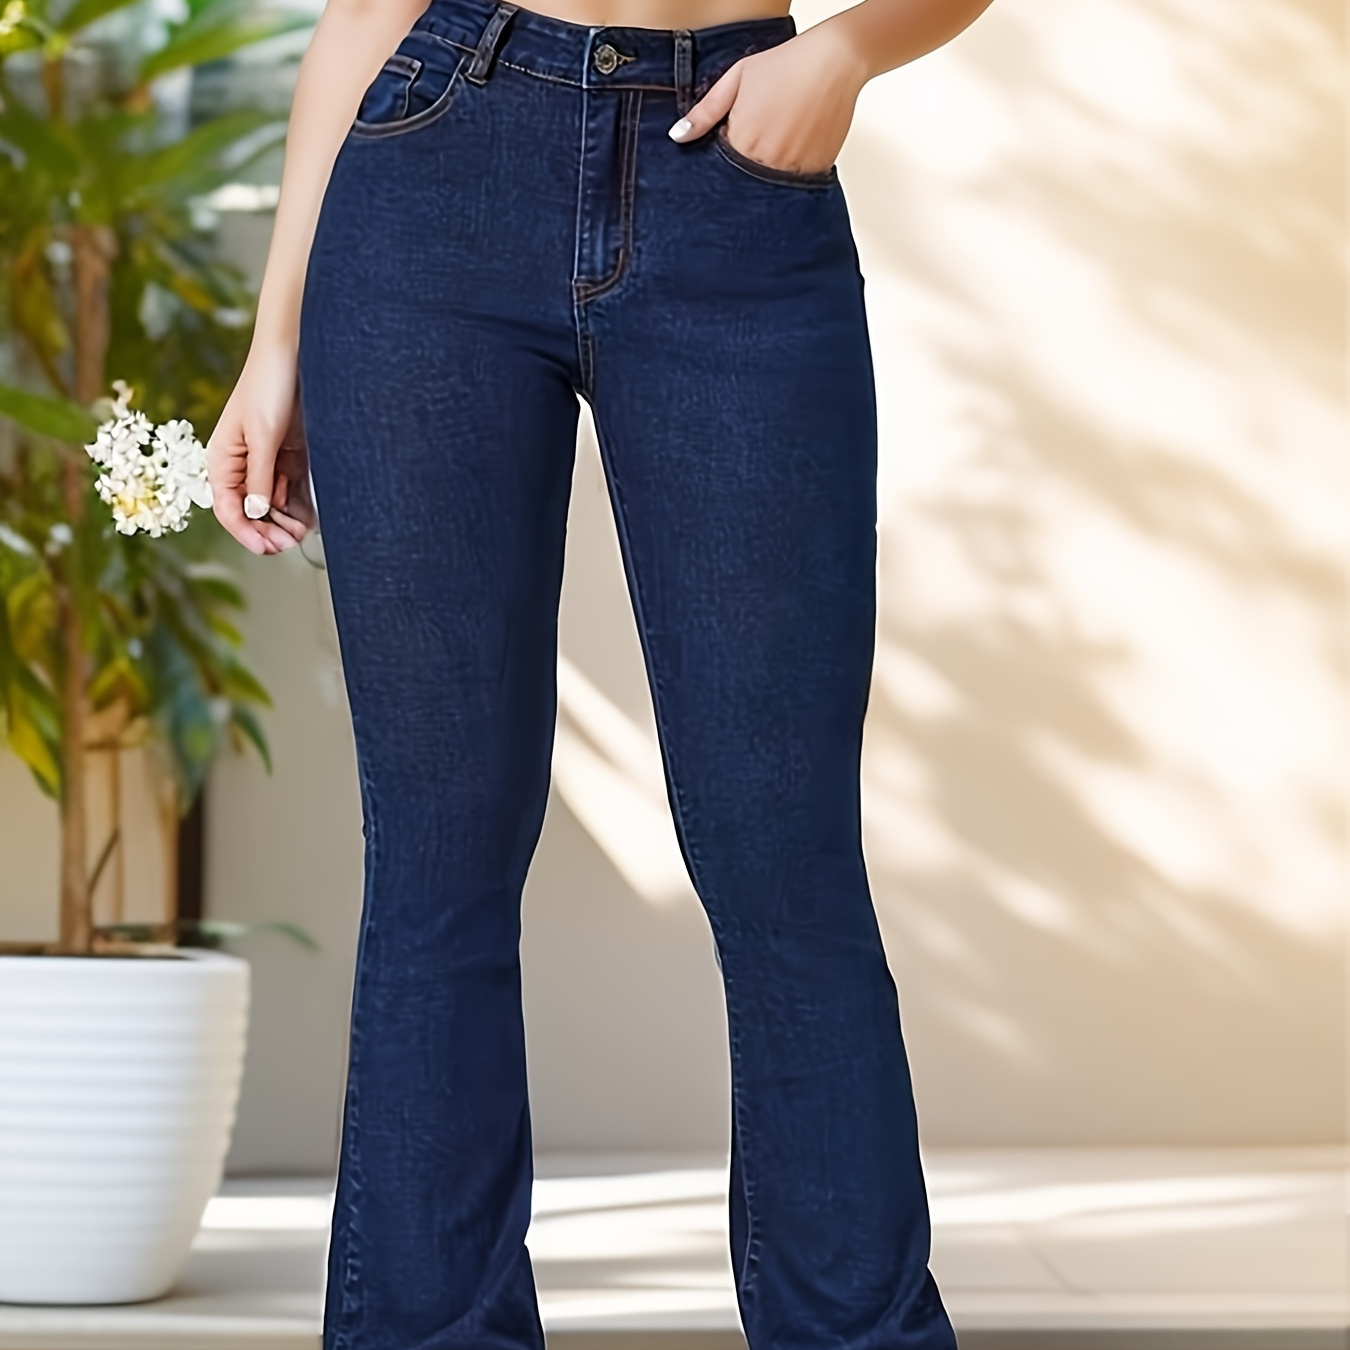 

Slant Pockets Casual Bootcut Jeans, High Stretch Versatie Denim Pants, Women's Denim Jeans & Clothing